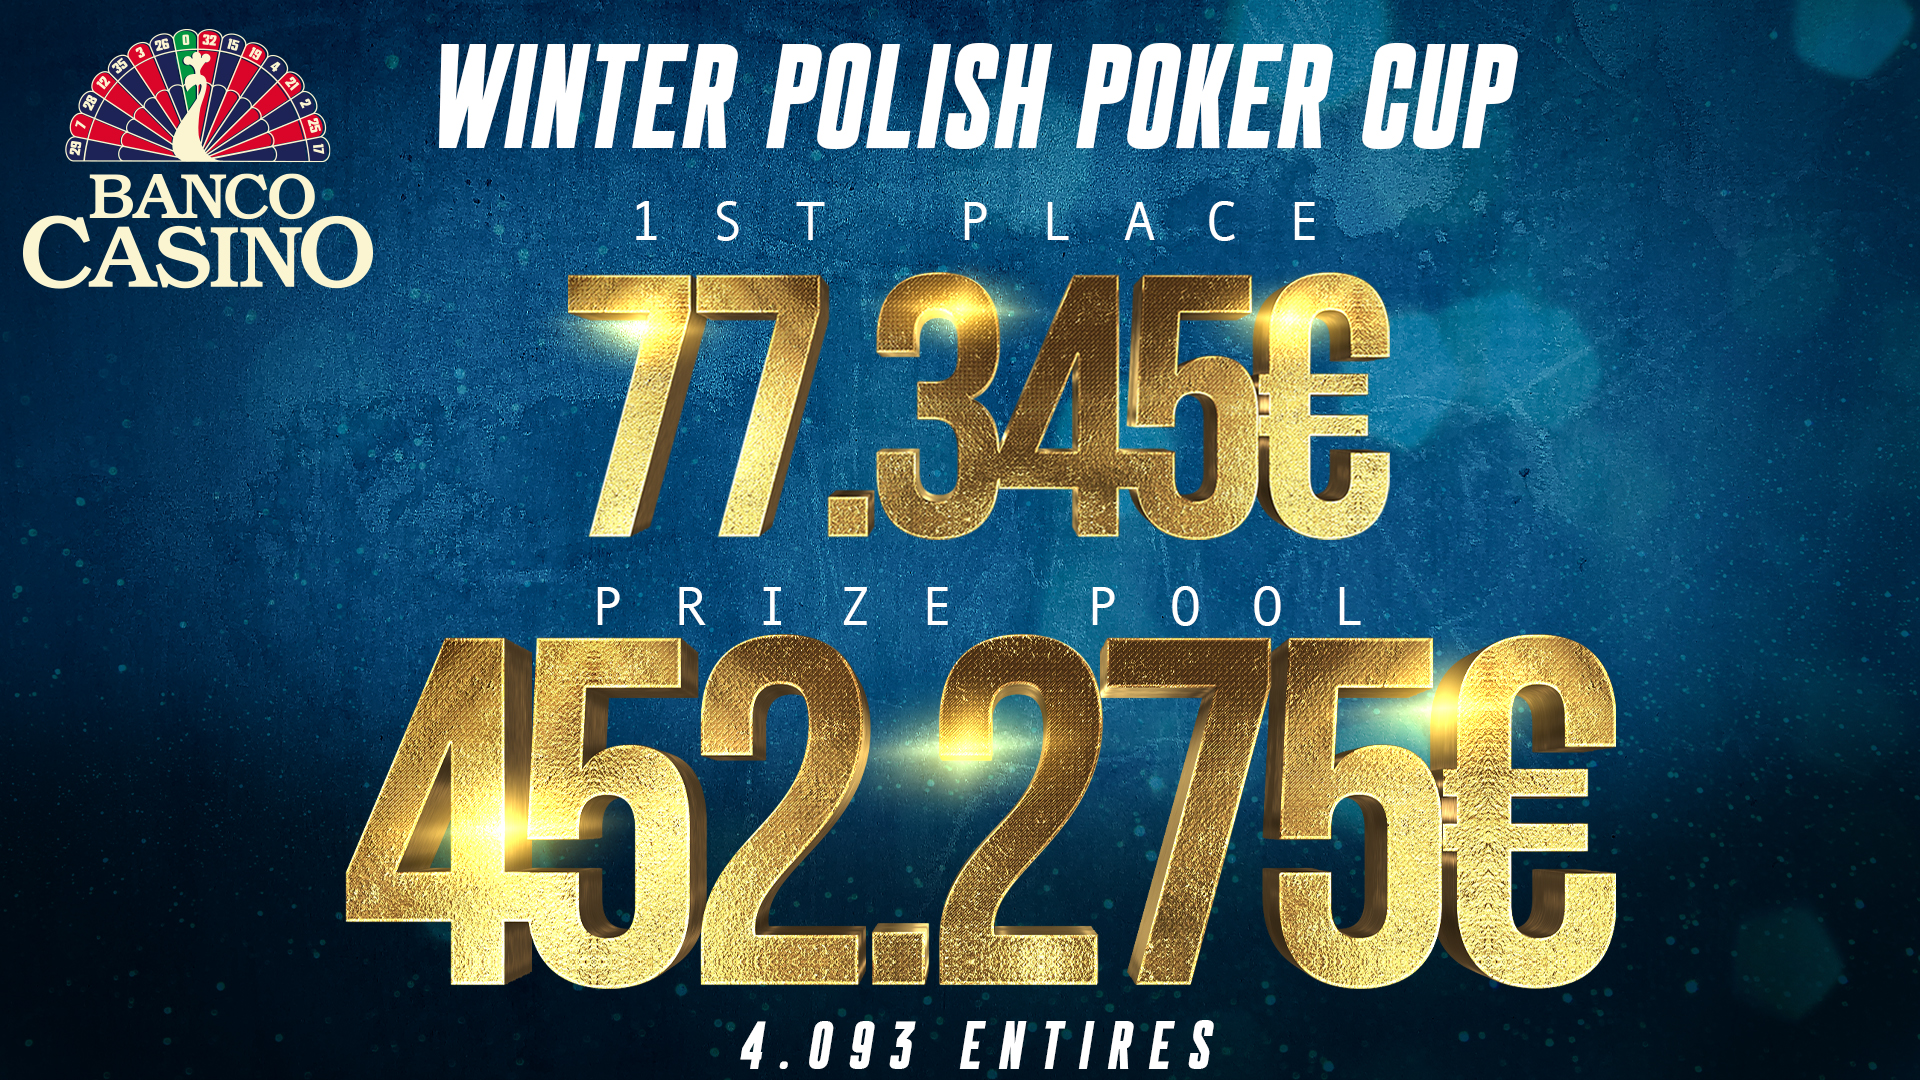 Winter Polish Poker Cup v Banco Casino odmení šampióna výhrou 77.345€!